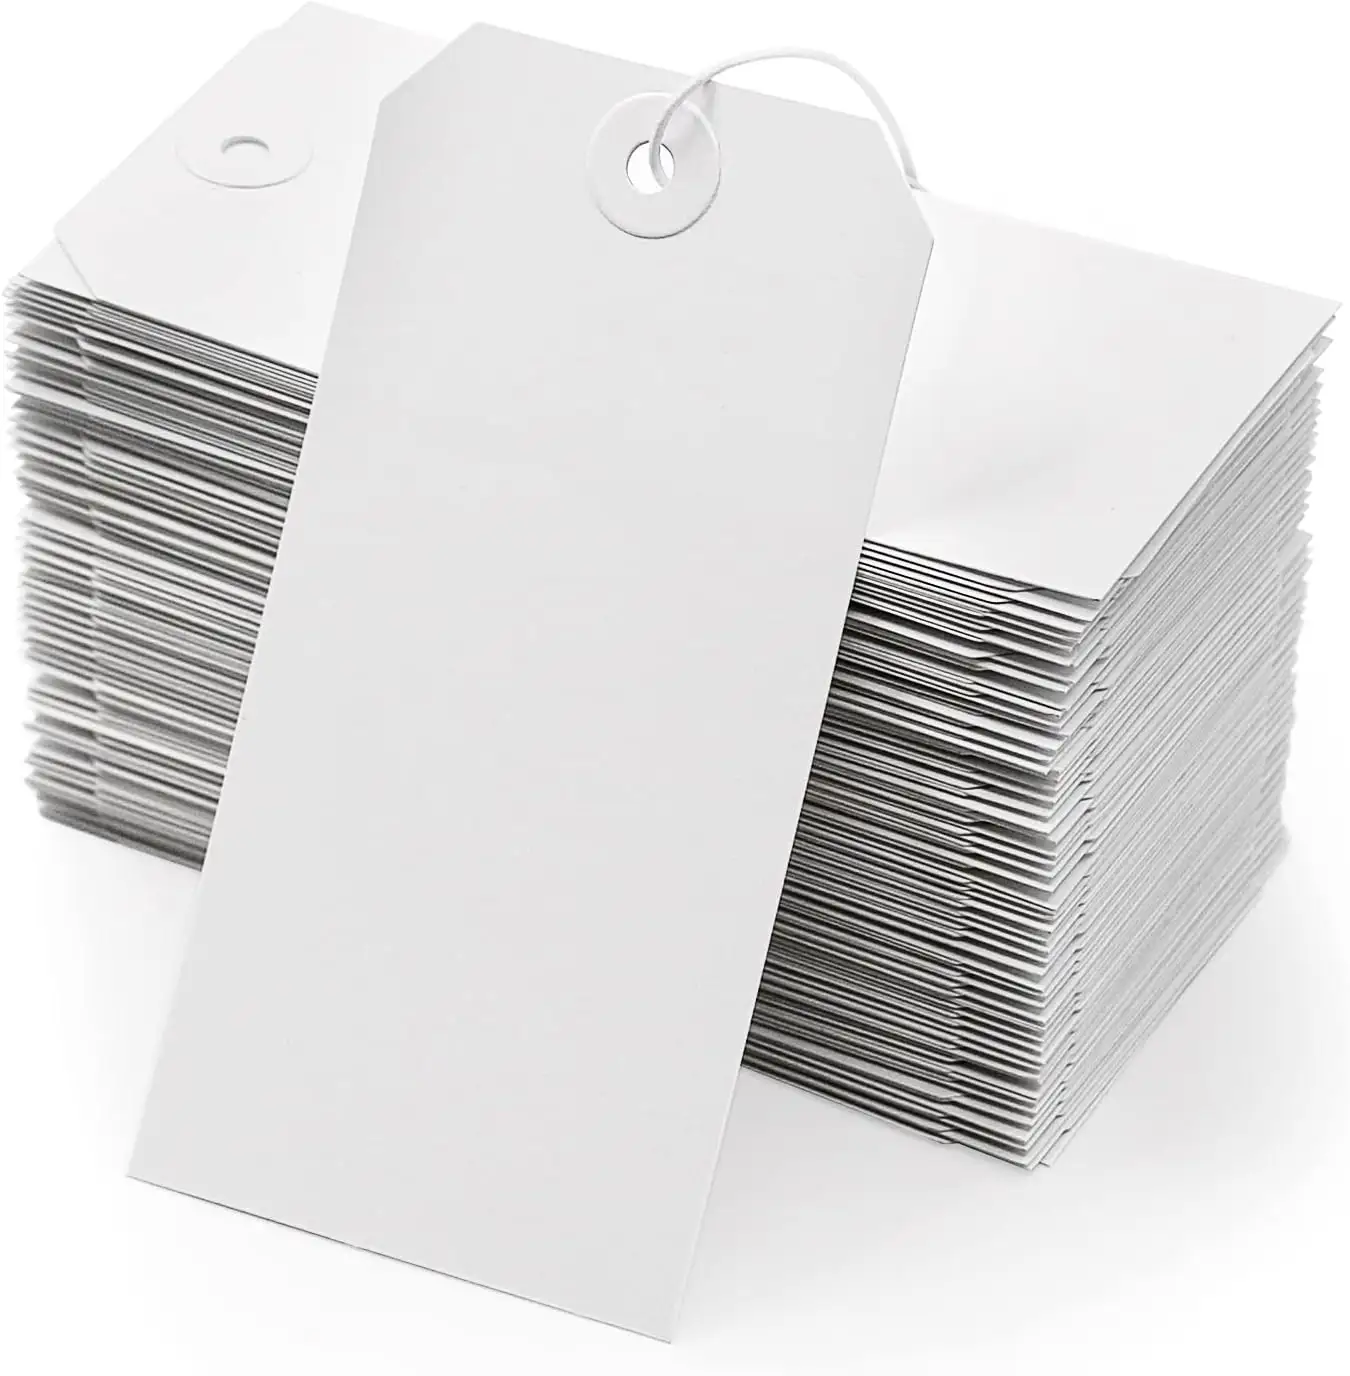 ملصقات شحن بيضاء سادة قابلة لإعادة التدوير ملصقات تعليمة مفرغة ملصقات تعليق ورقية من المخزون مع مخزون إضافي